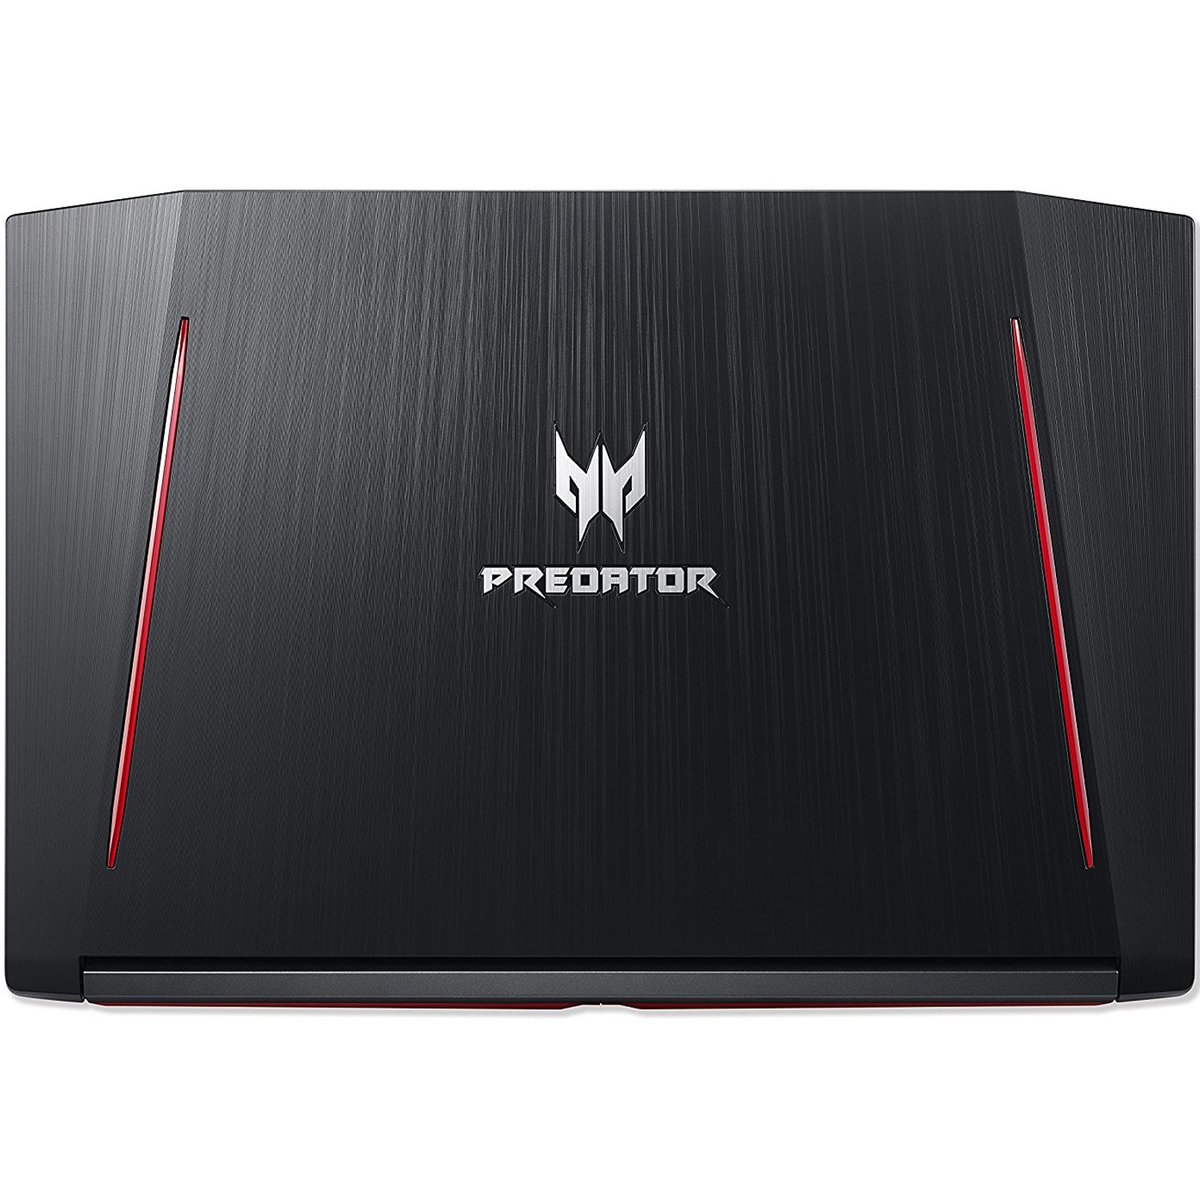 Acer PREDATOR PH317-51-73D2 Gaming Laptop Black